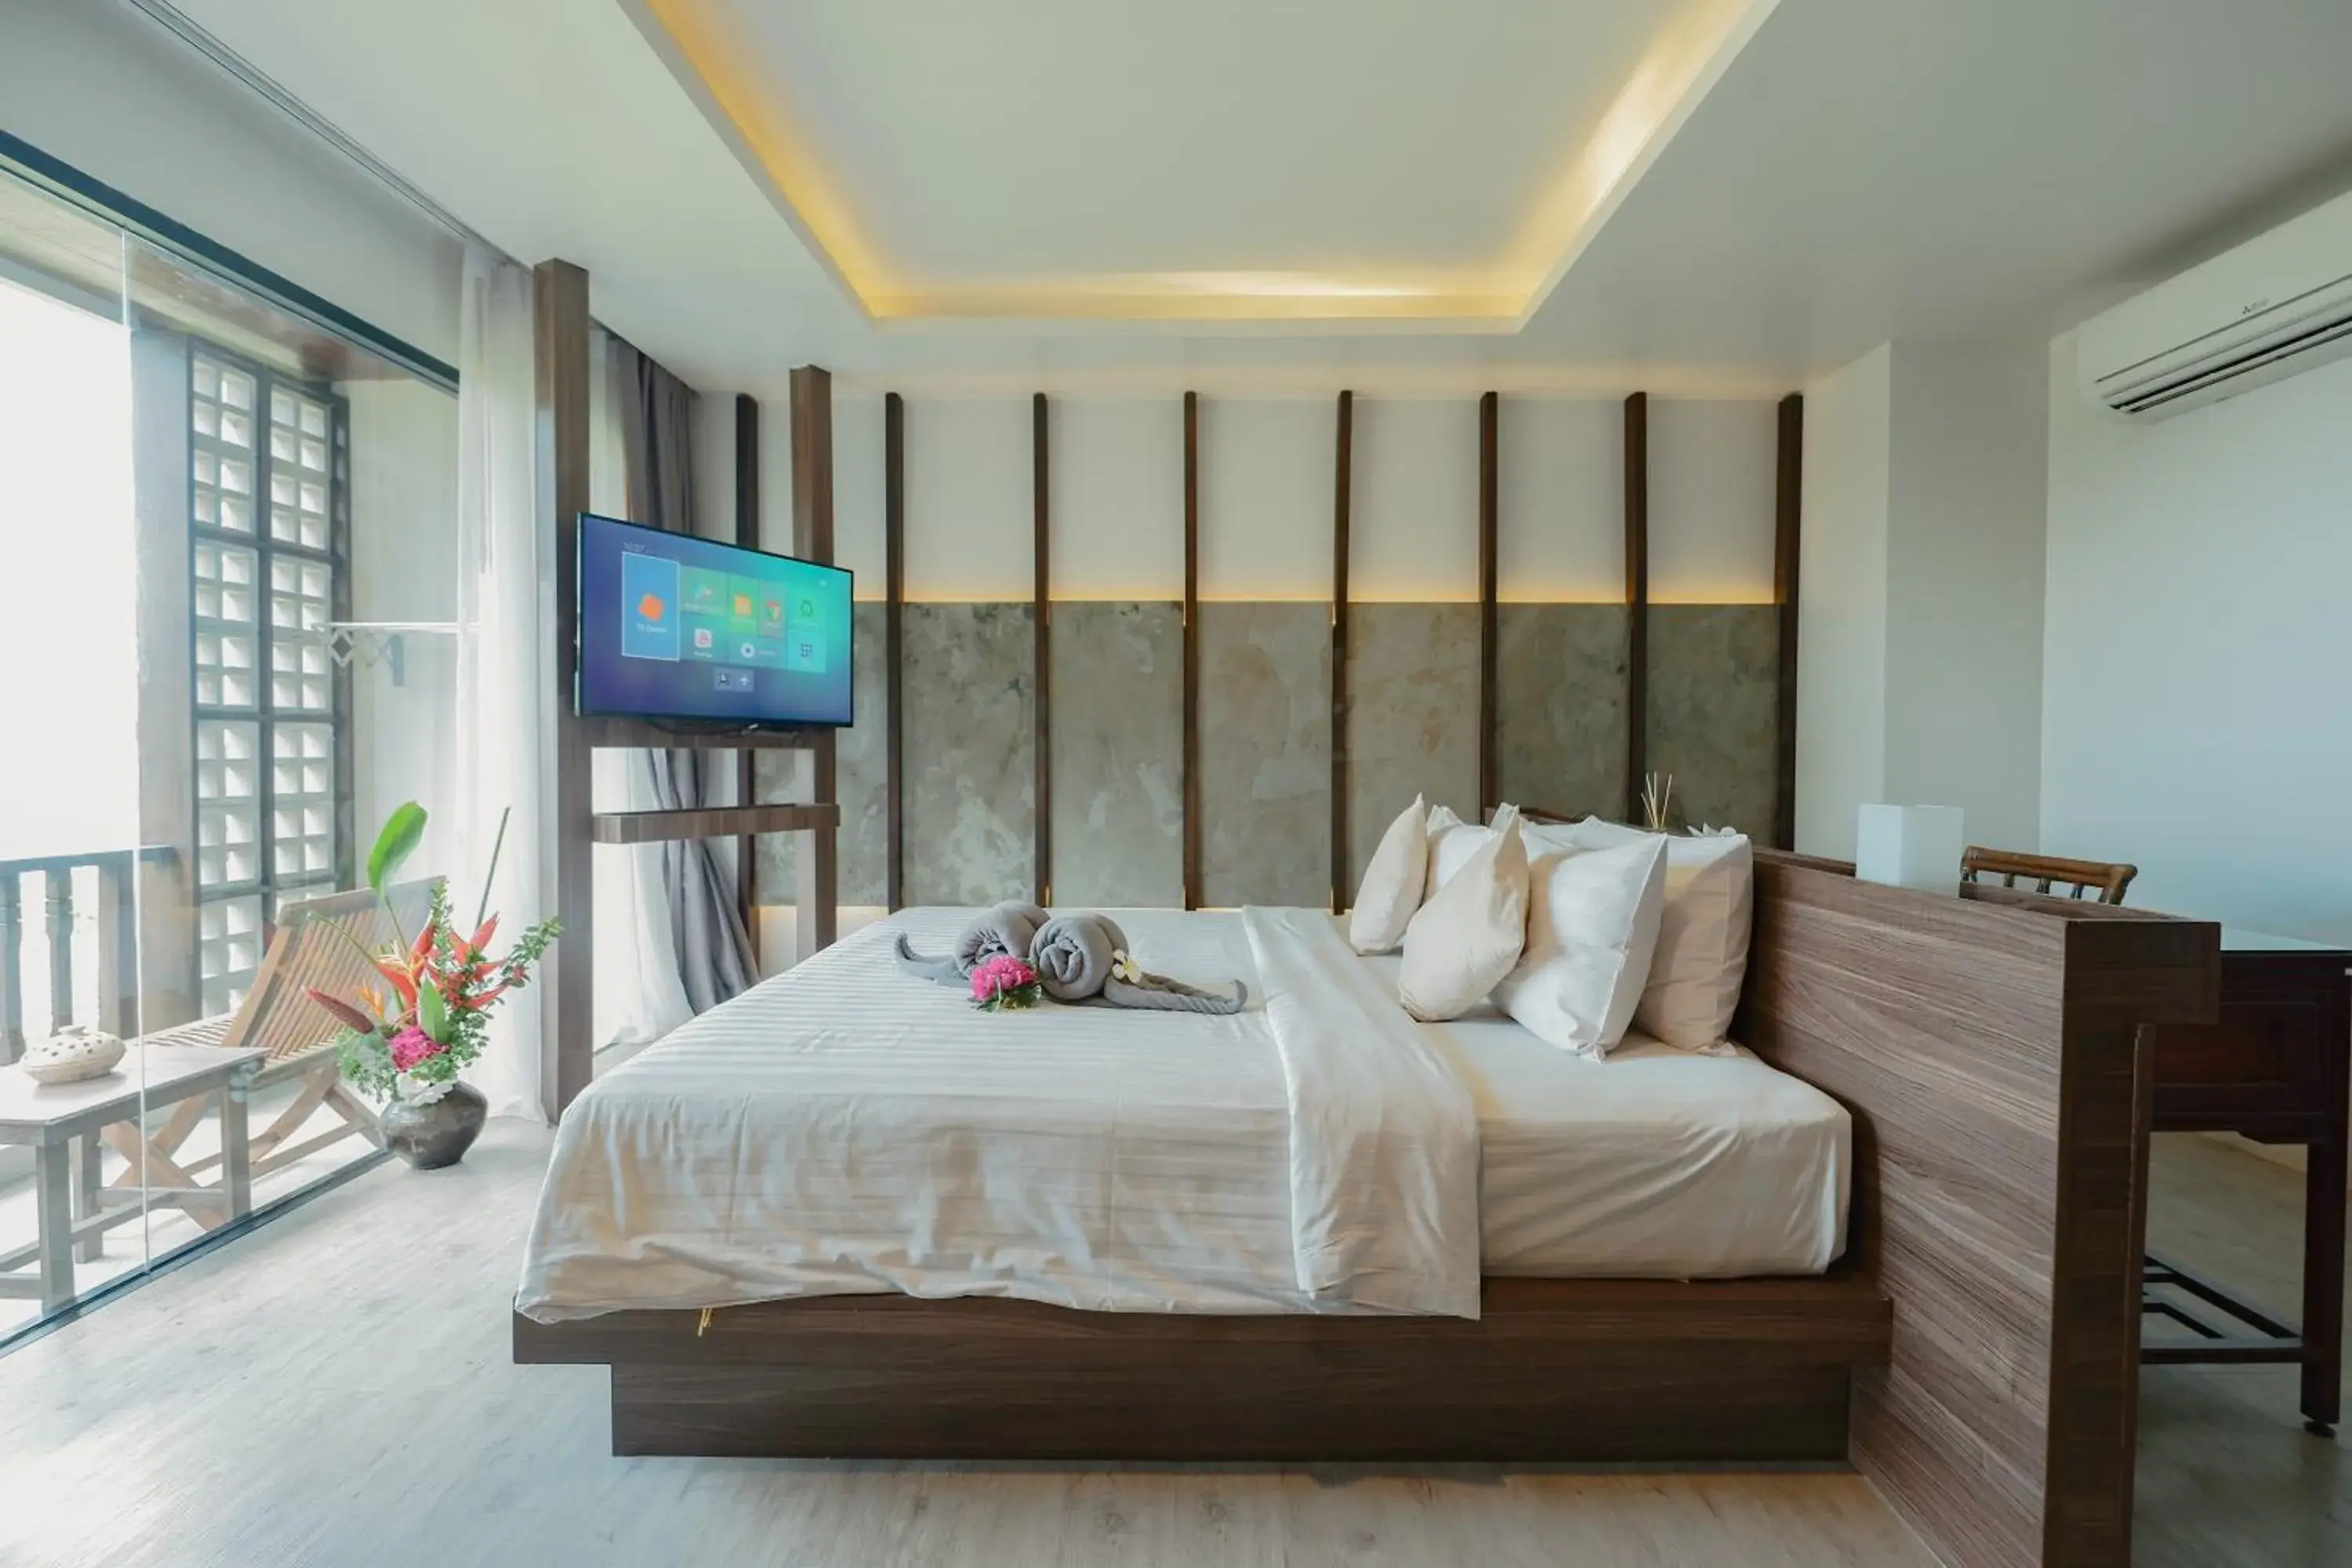 Bed in SriLanta Resort and Spa